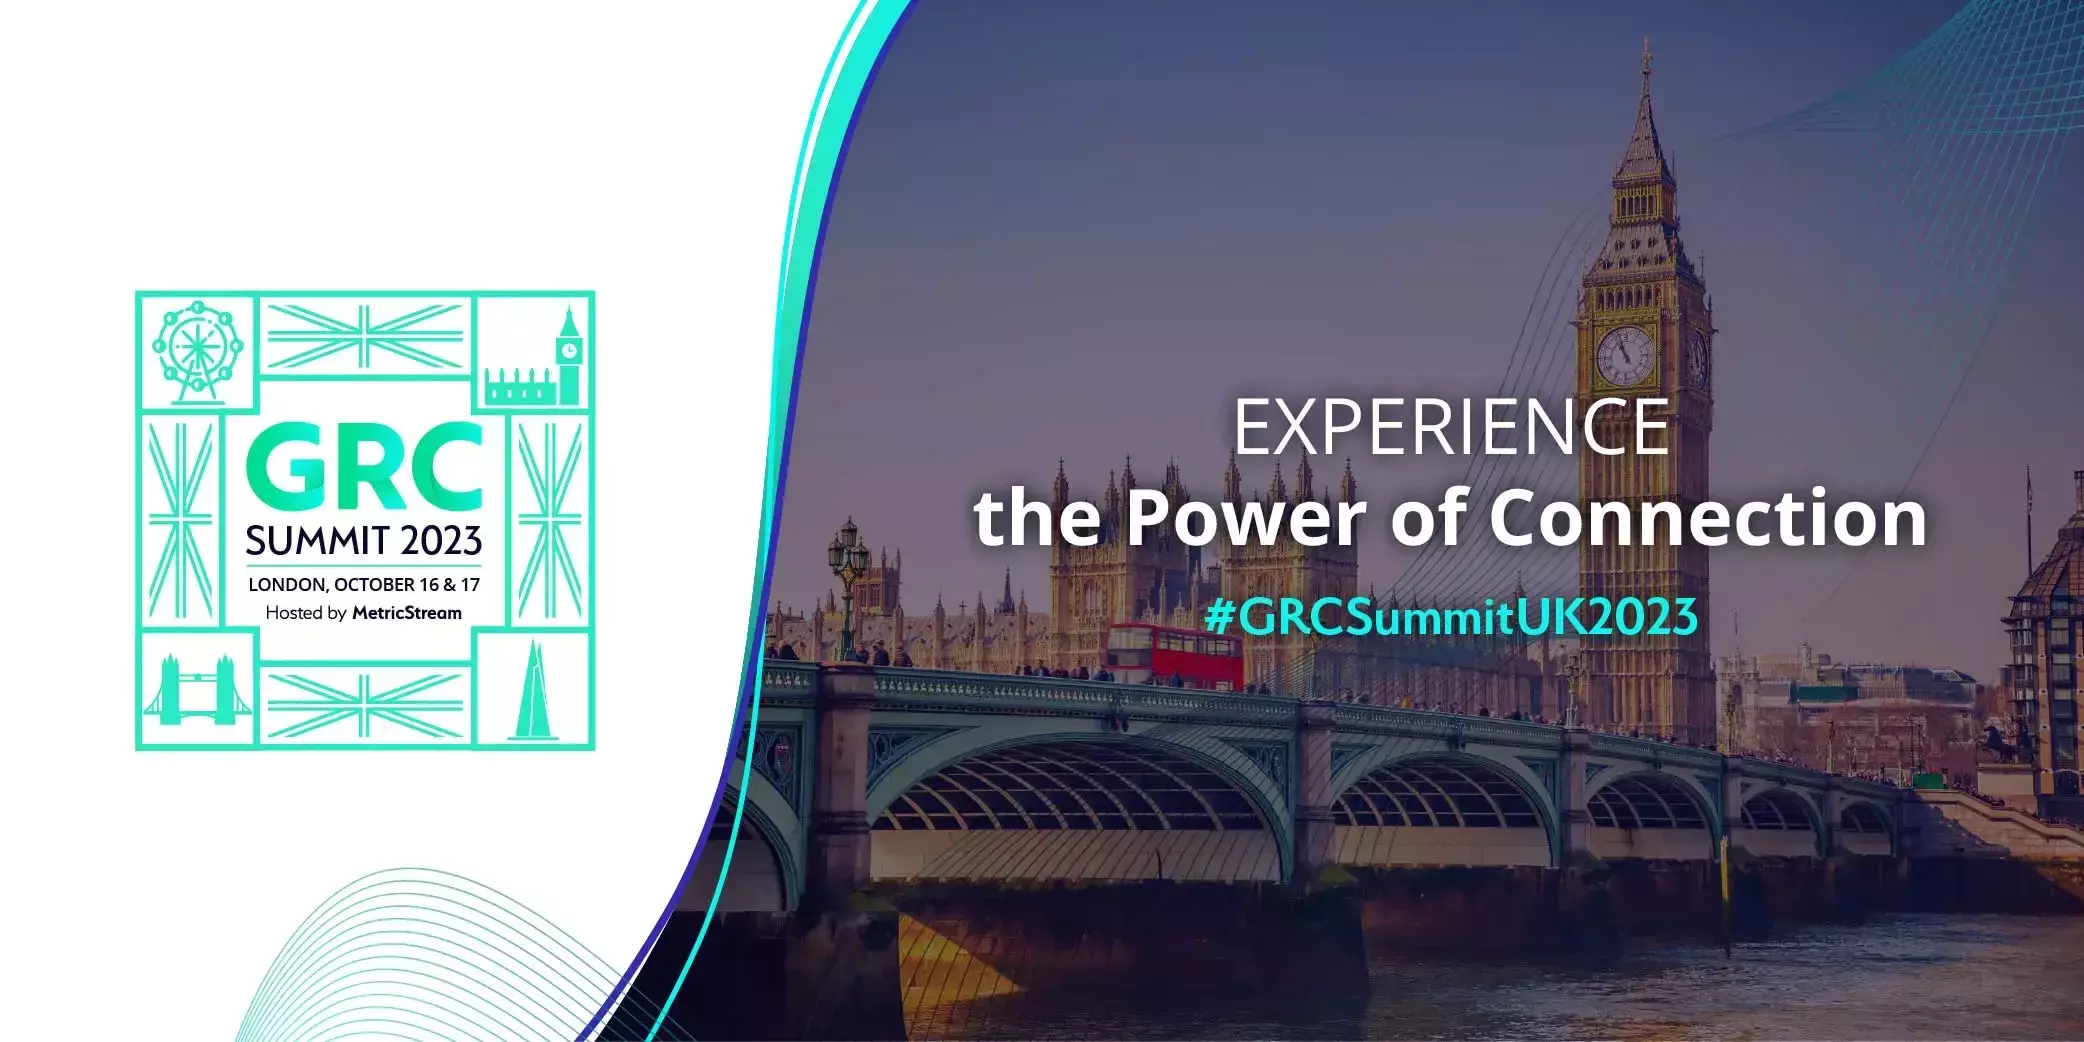 GRC Summit, London, 2023: Meet the Speakers